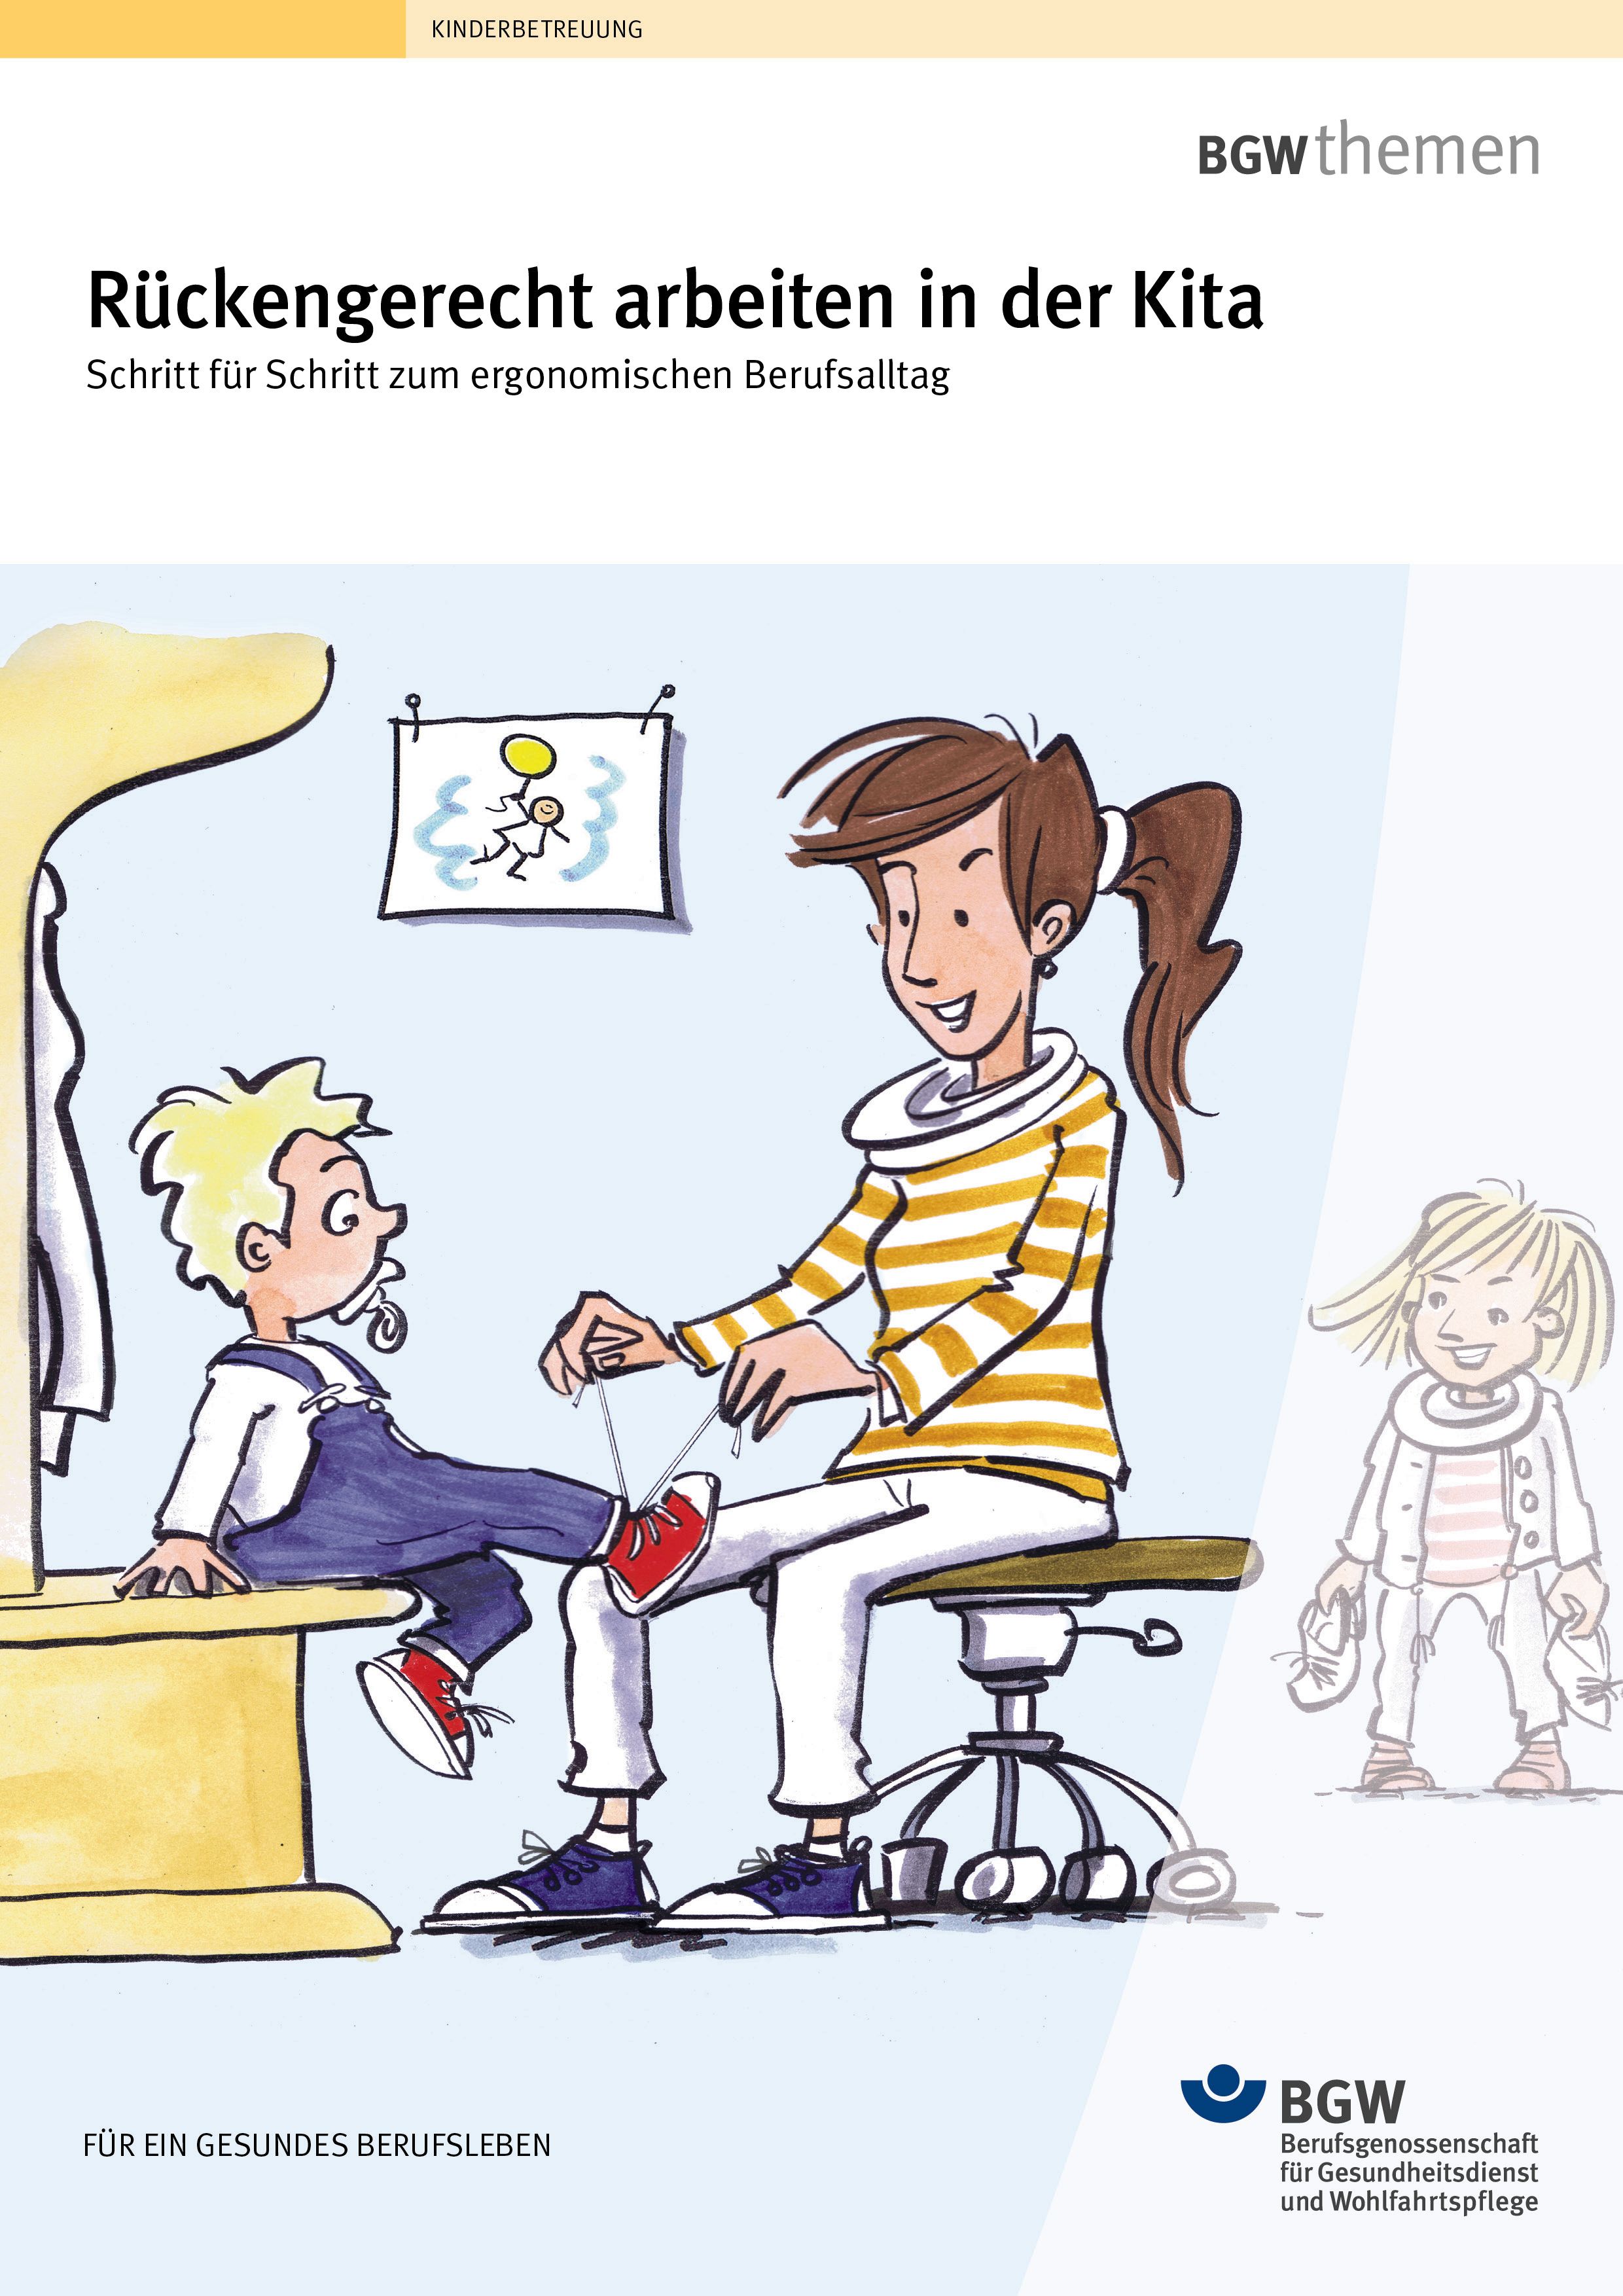 Titel: Rückengerecht arbeiten in der Kita - Illustration: sitzende Kindergärtnerin bindet einem Kind die Schuhe zu. Kind sitzt erhöht